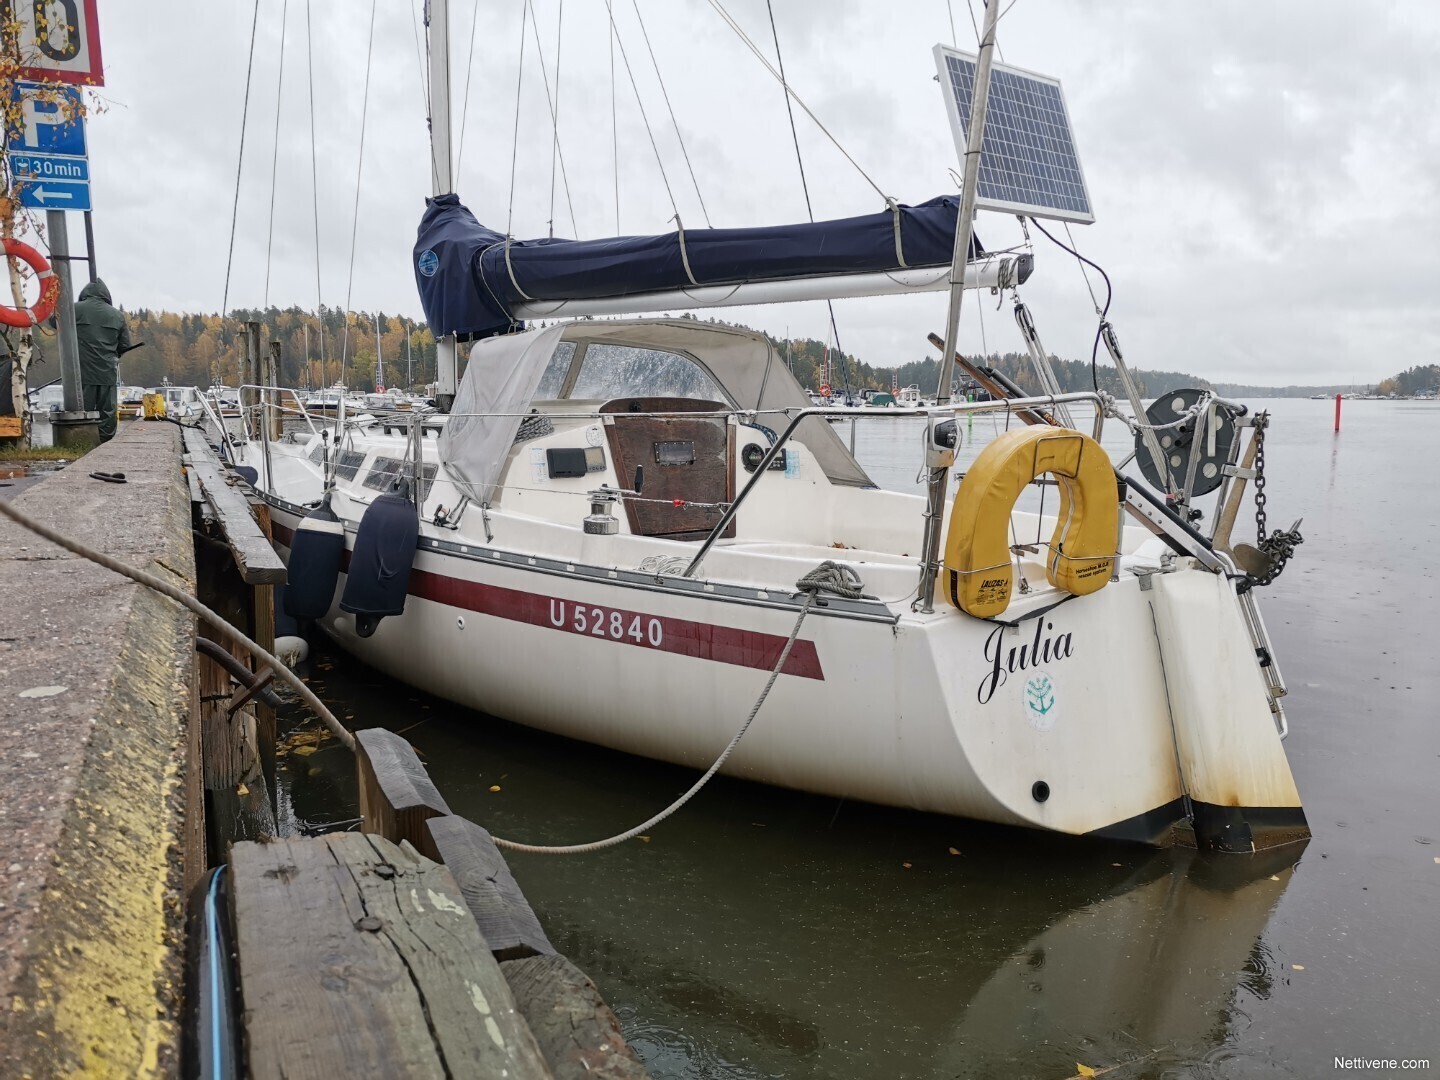 nf 30 sailboat